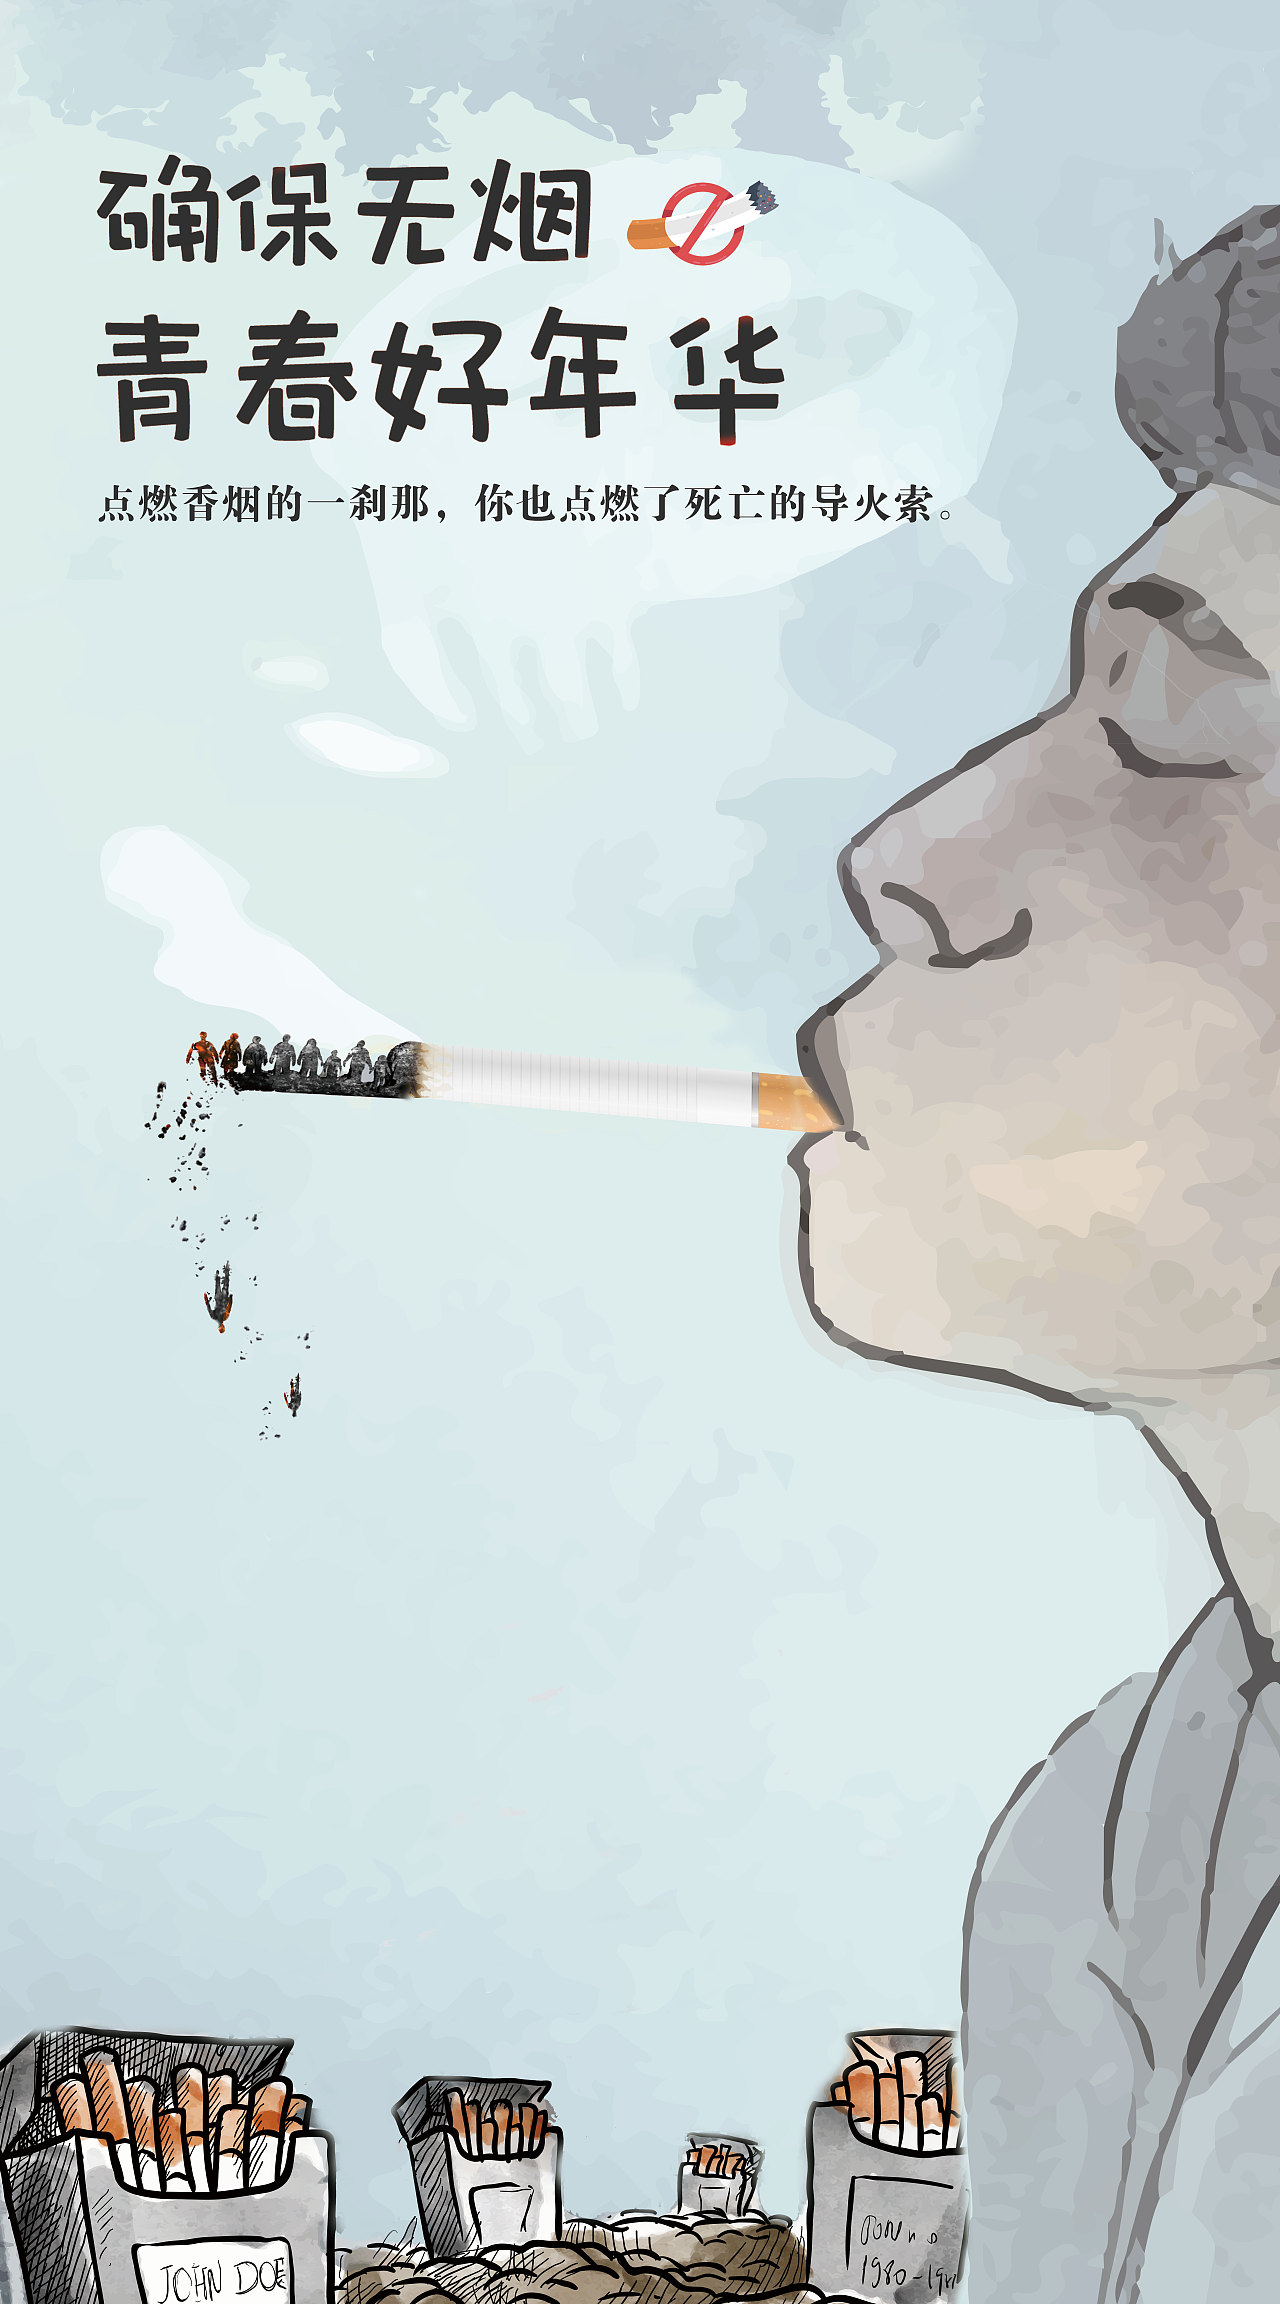 五峰書院 | 浦爱·五峰启明公益健康学堂：吸烟对你的身体悄悄做的坏事-在线订票-互动吧